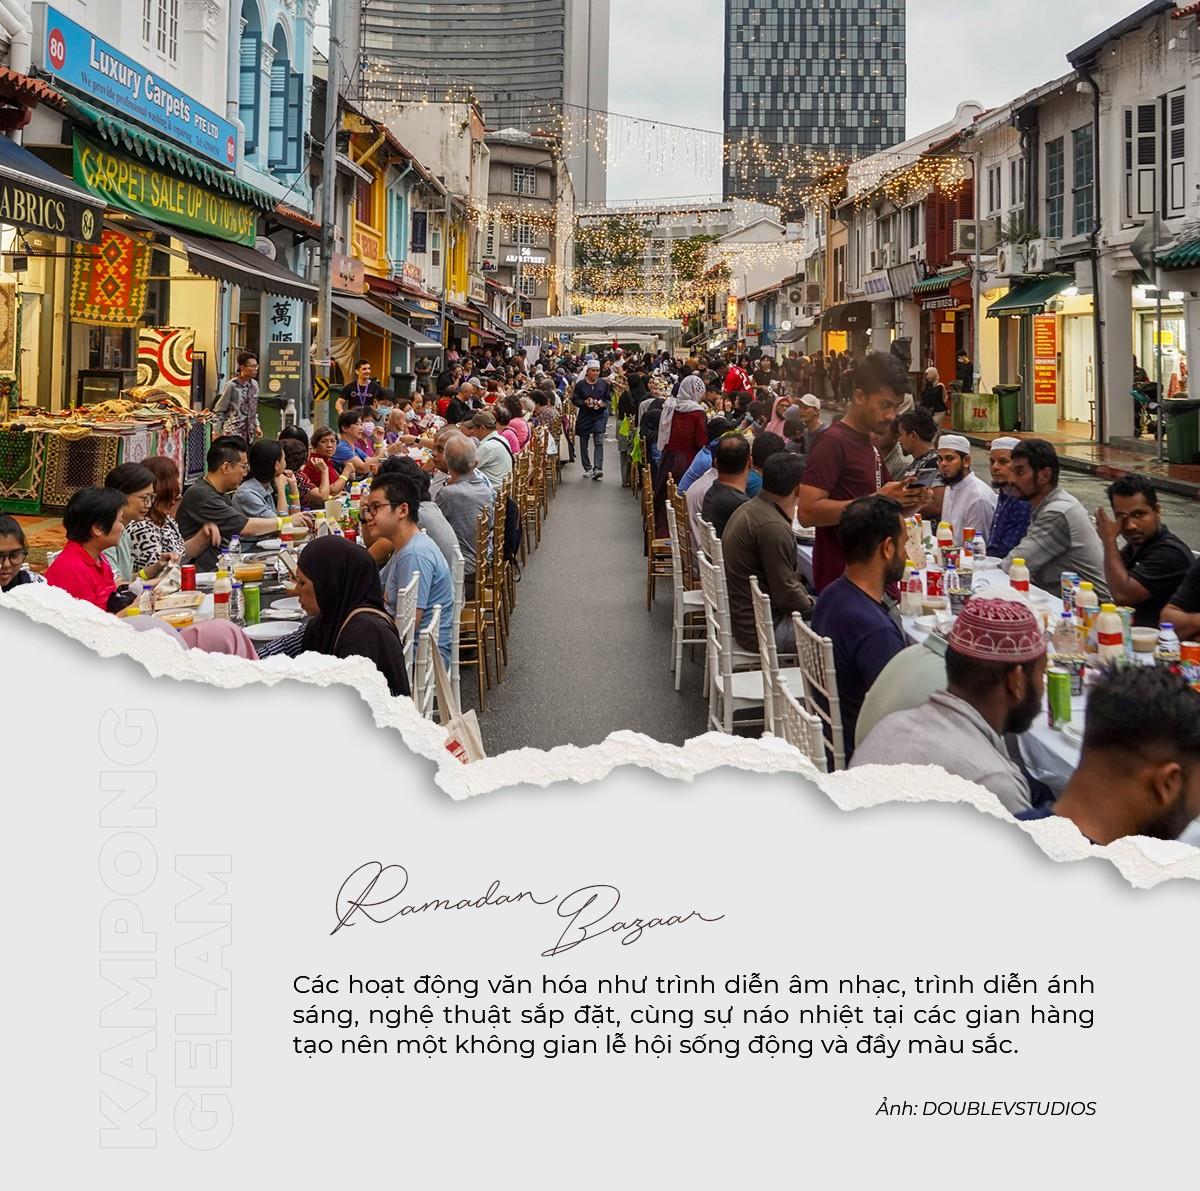 Kampong Gelam: Khám phá nét quyến rũ của một khu phố di sản giữa lòng đô thị Singapore - ảnh 2